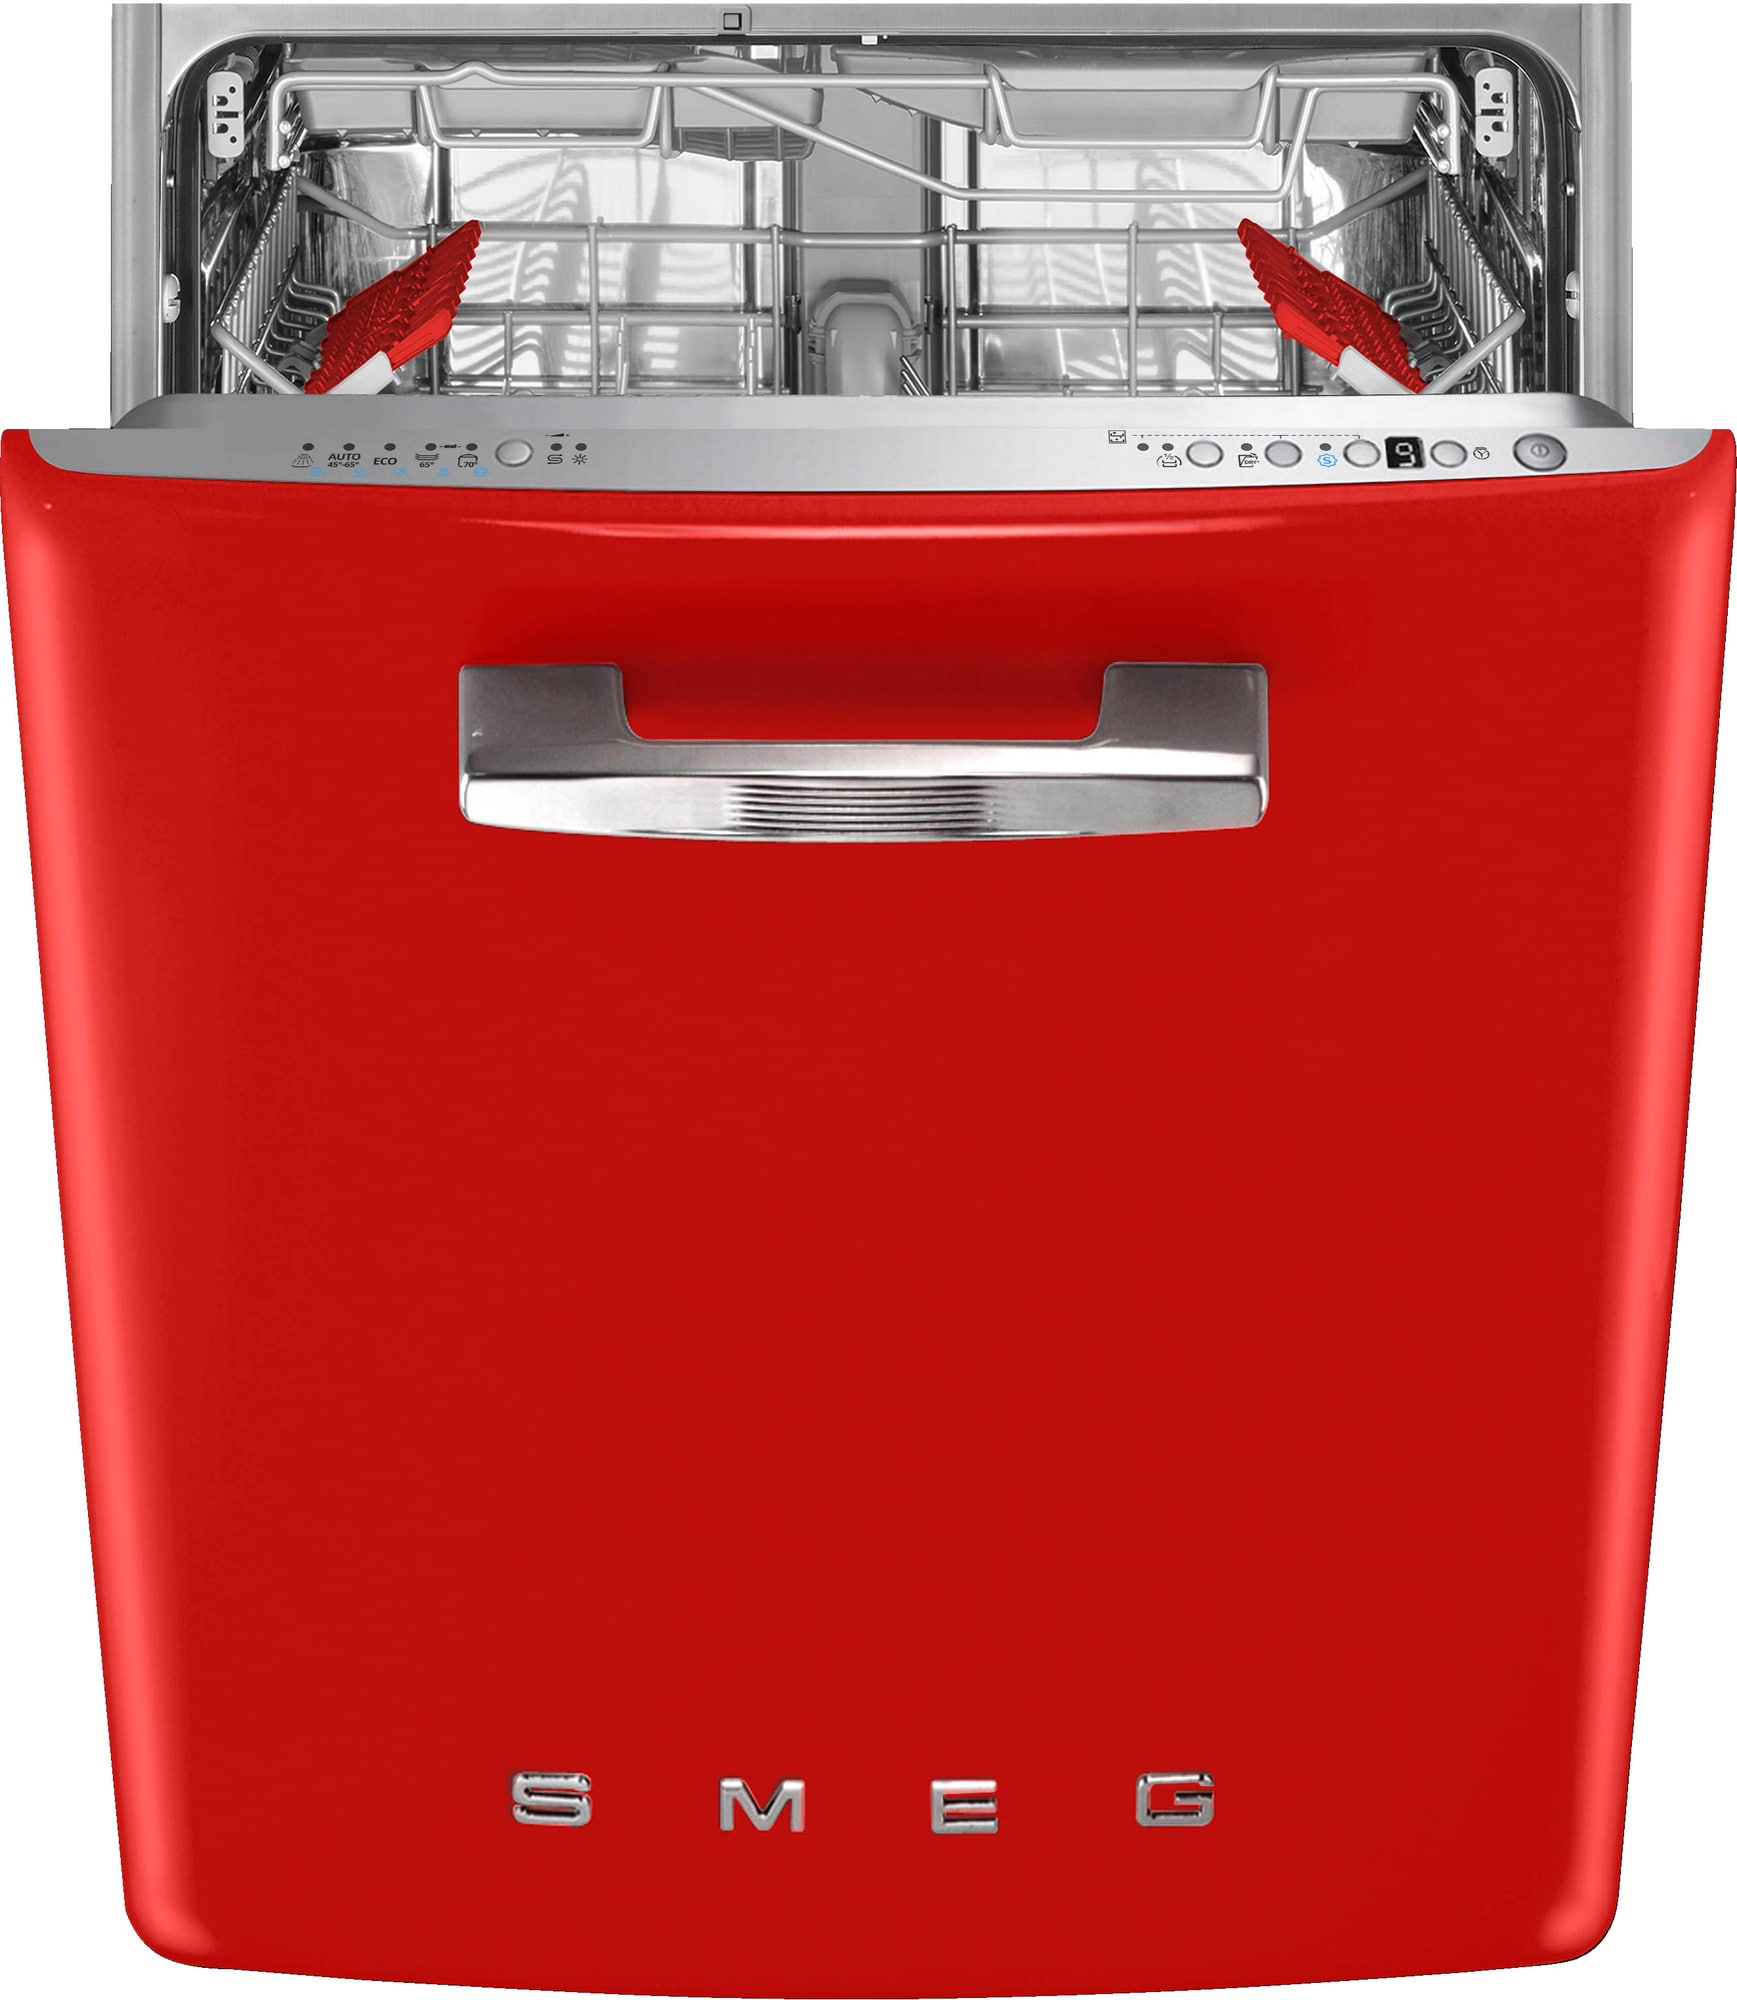 Køb SMEG Opvaskemaskine online til meget lav pris!